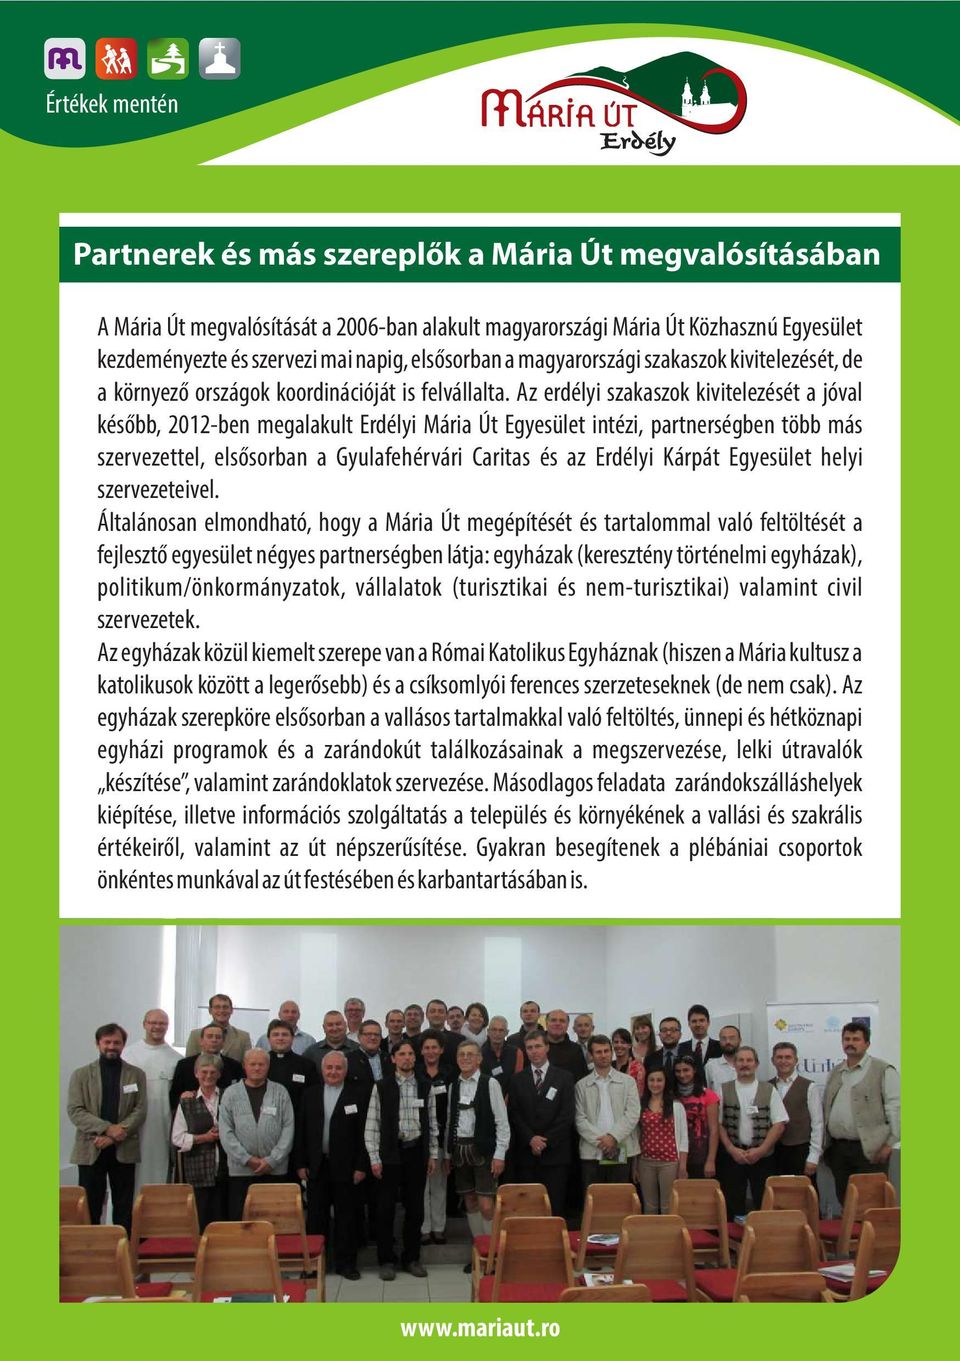 Az erdélyi szakaszok kivitelezését a jóval később, 2012-ben megalakult Erdélyi Mária Út Egyesület intézi, partnerségben több más szervezettel, elsősorban a Gyulafehérvári Caritas és az Erdélyi Kárpát